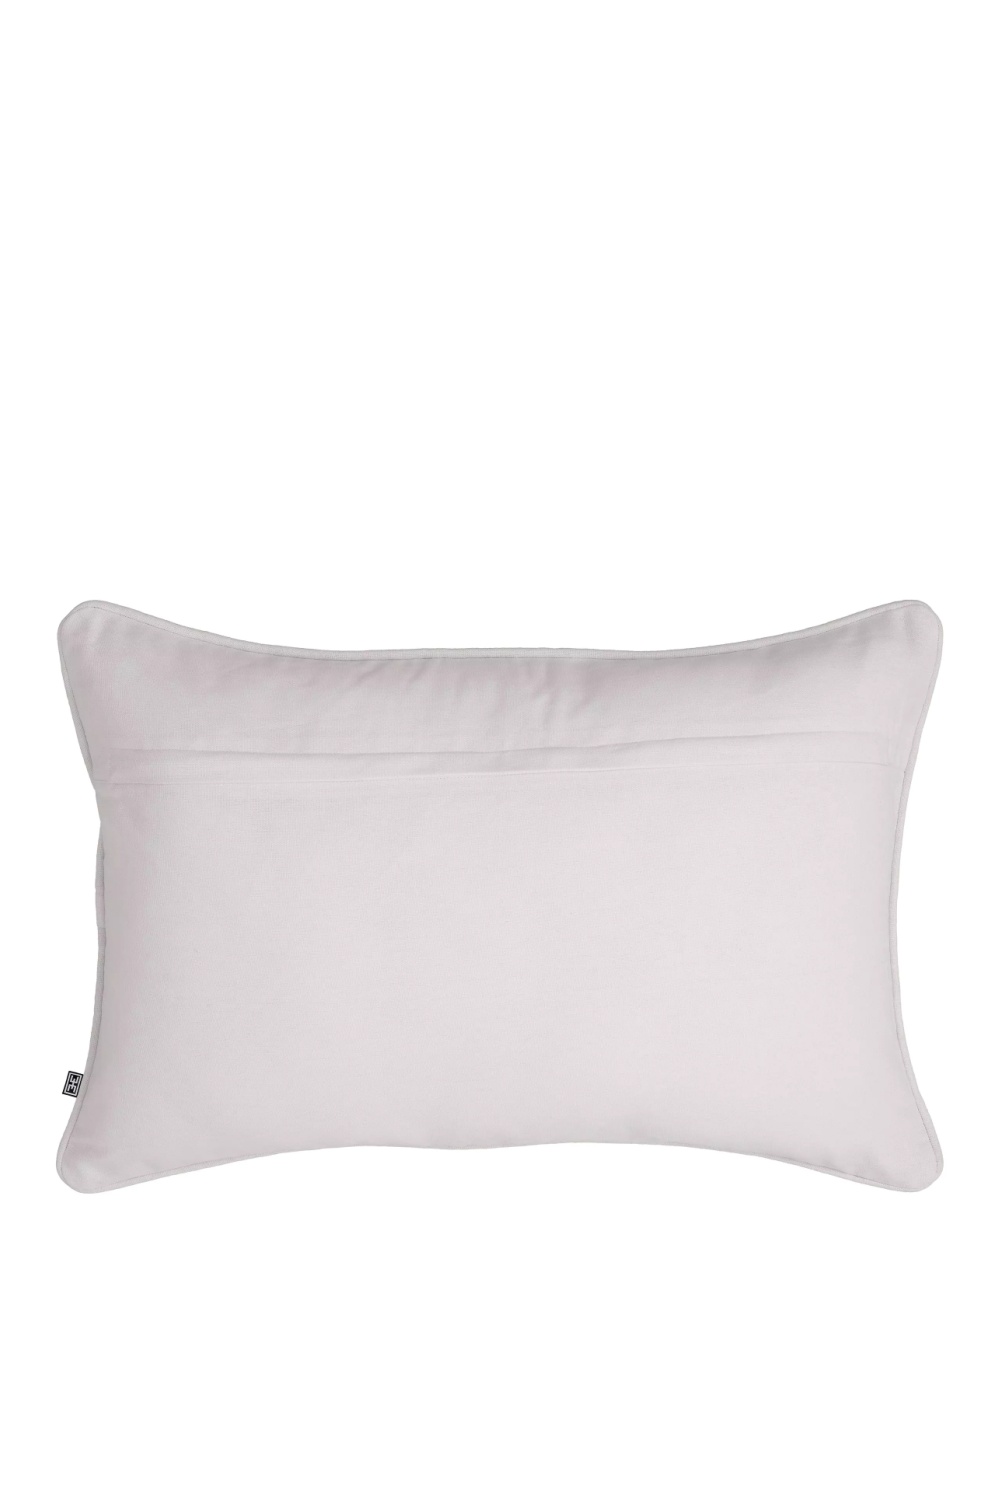 Viscose Modern Lumbar Pillow | Eichholtz Abaças | Oroa.com